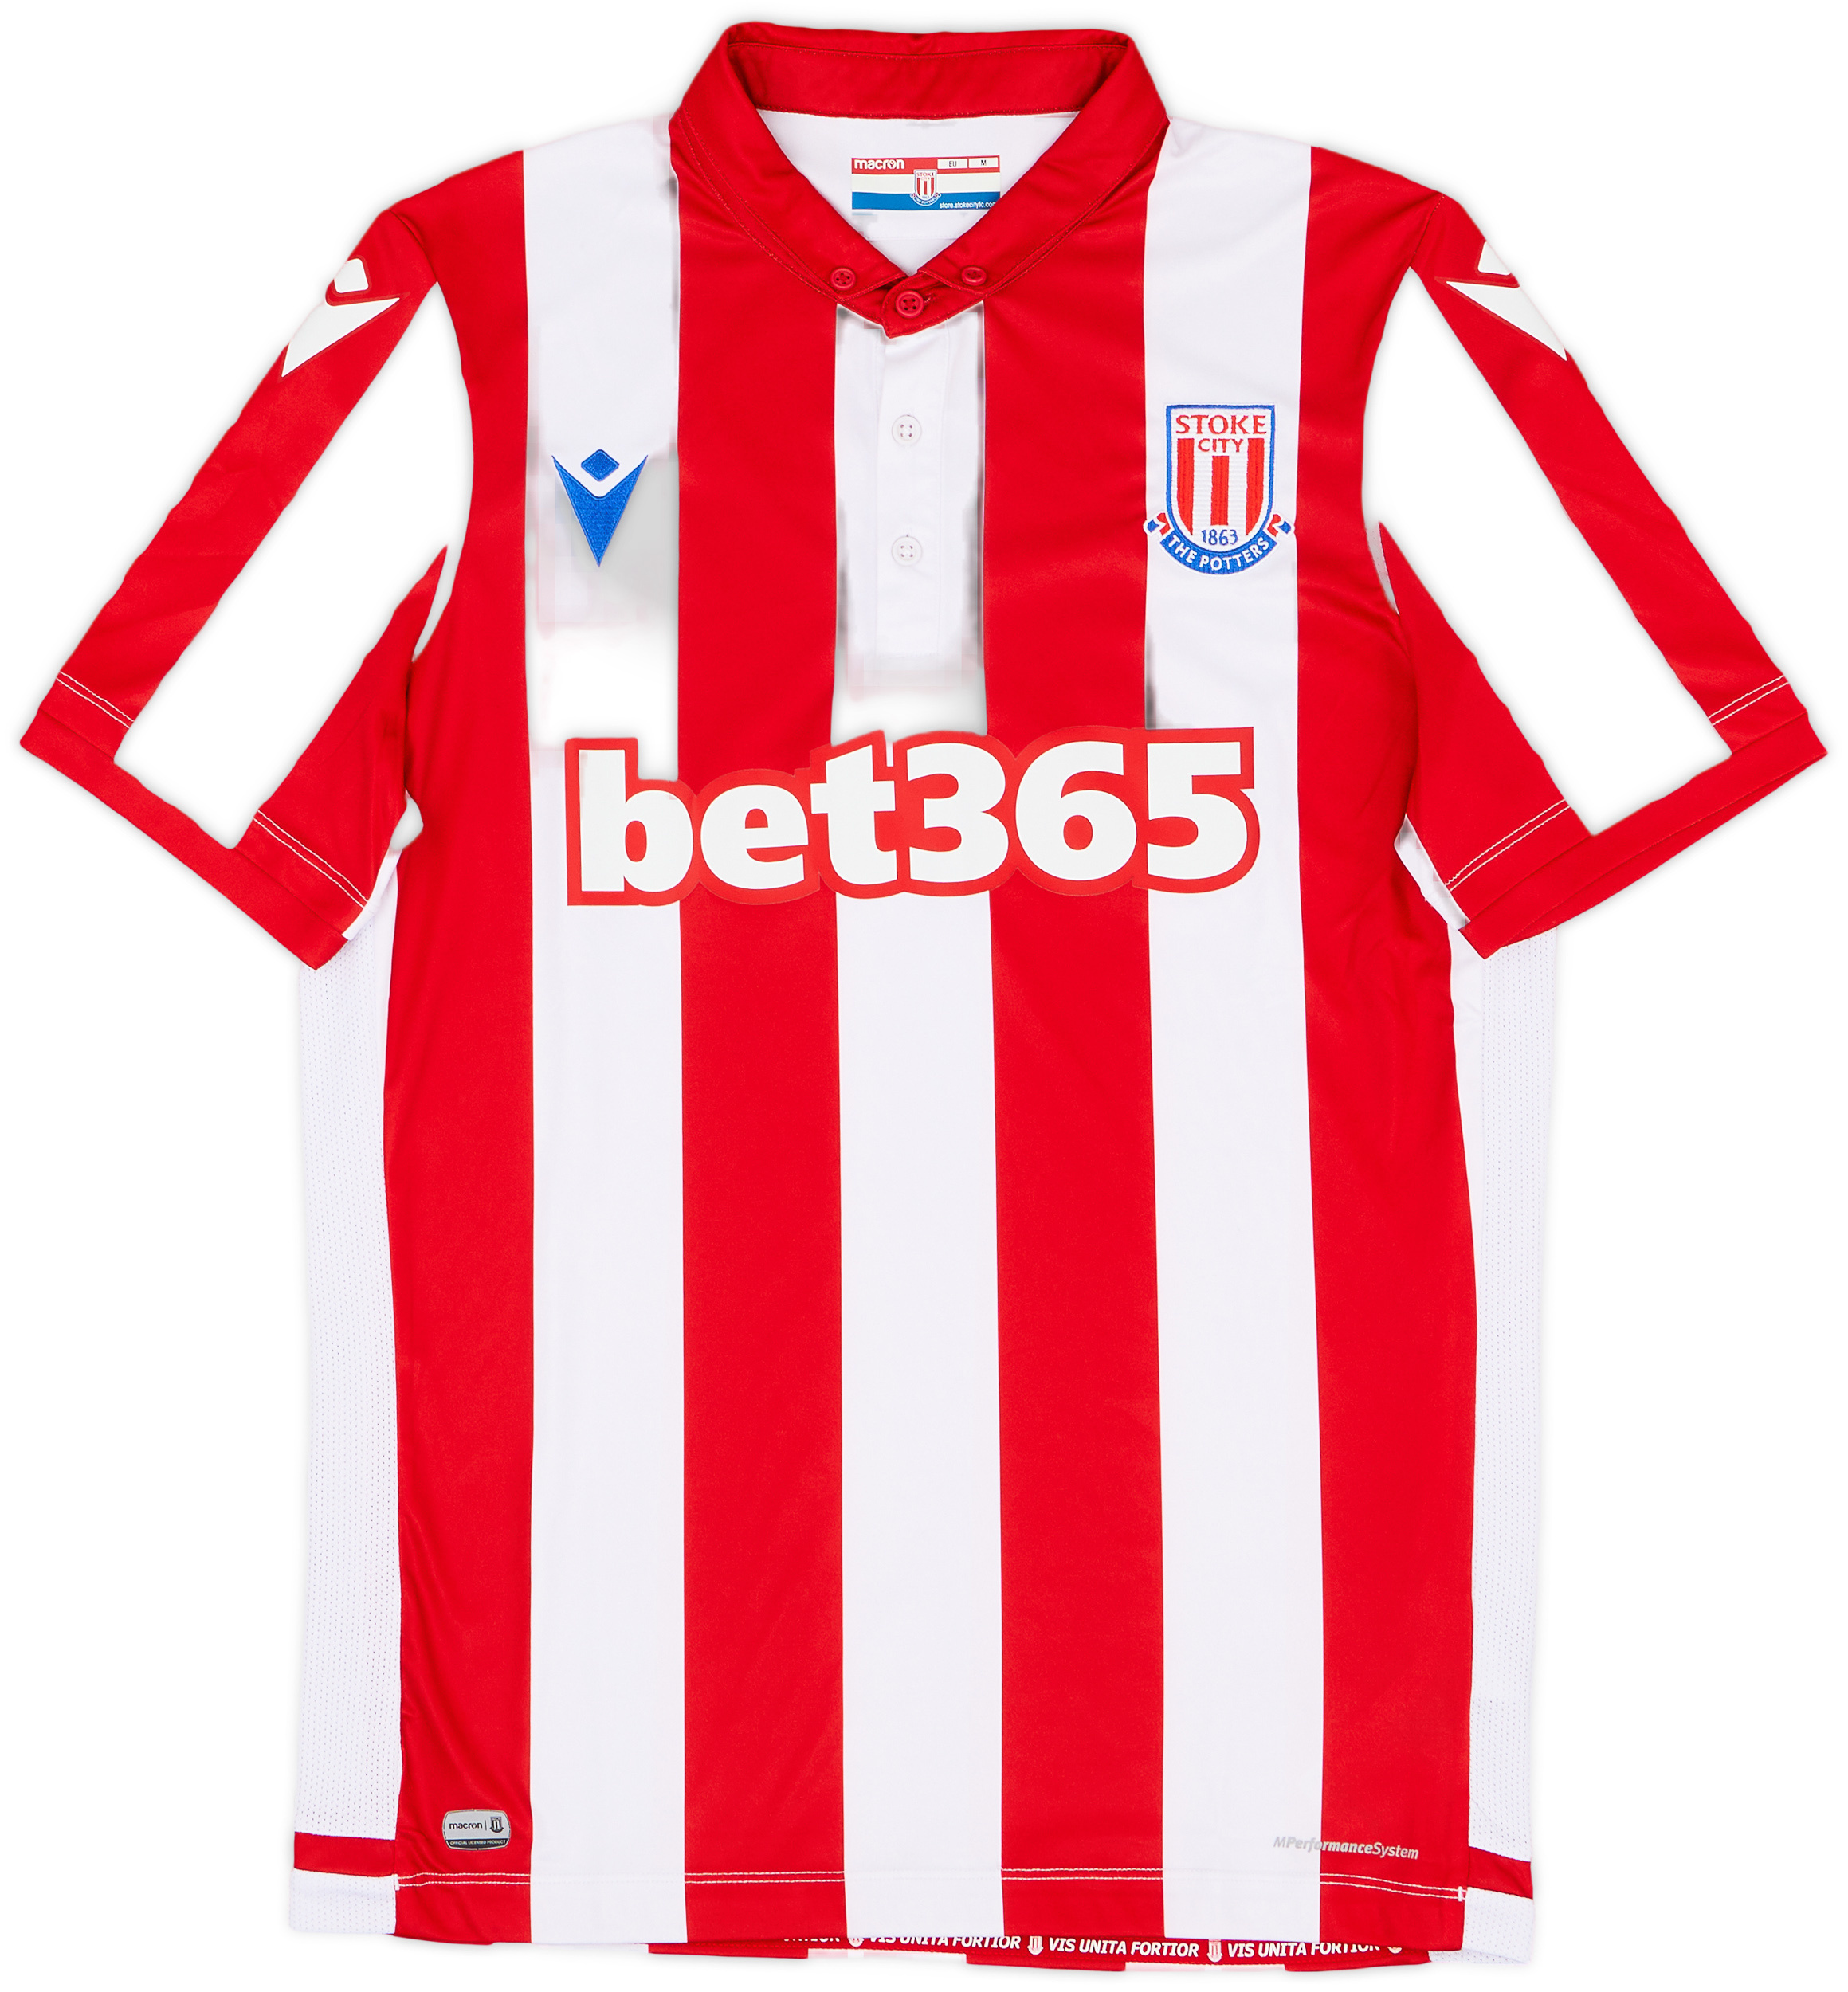 Stoke City  home camisa (Original)